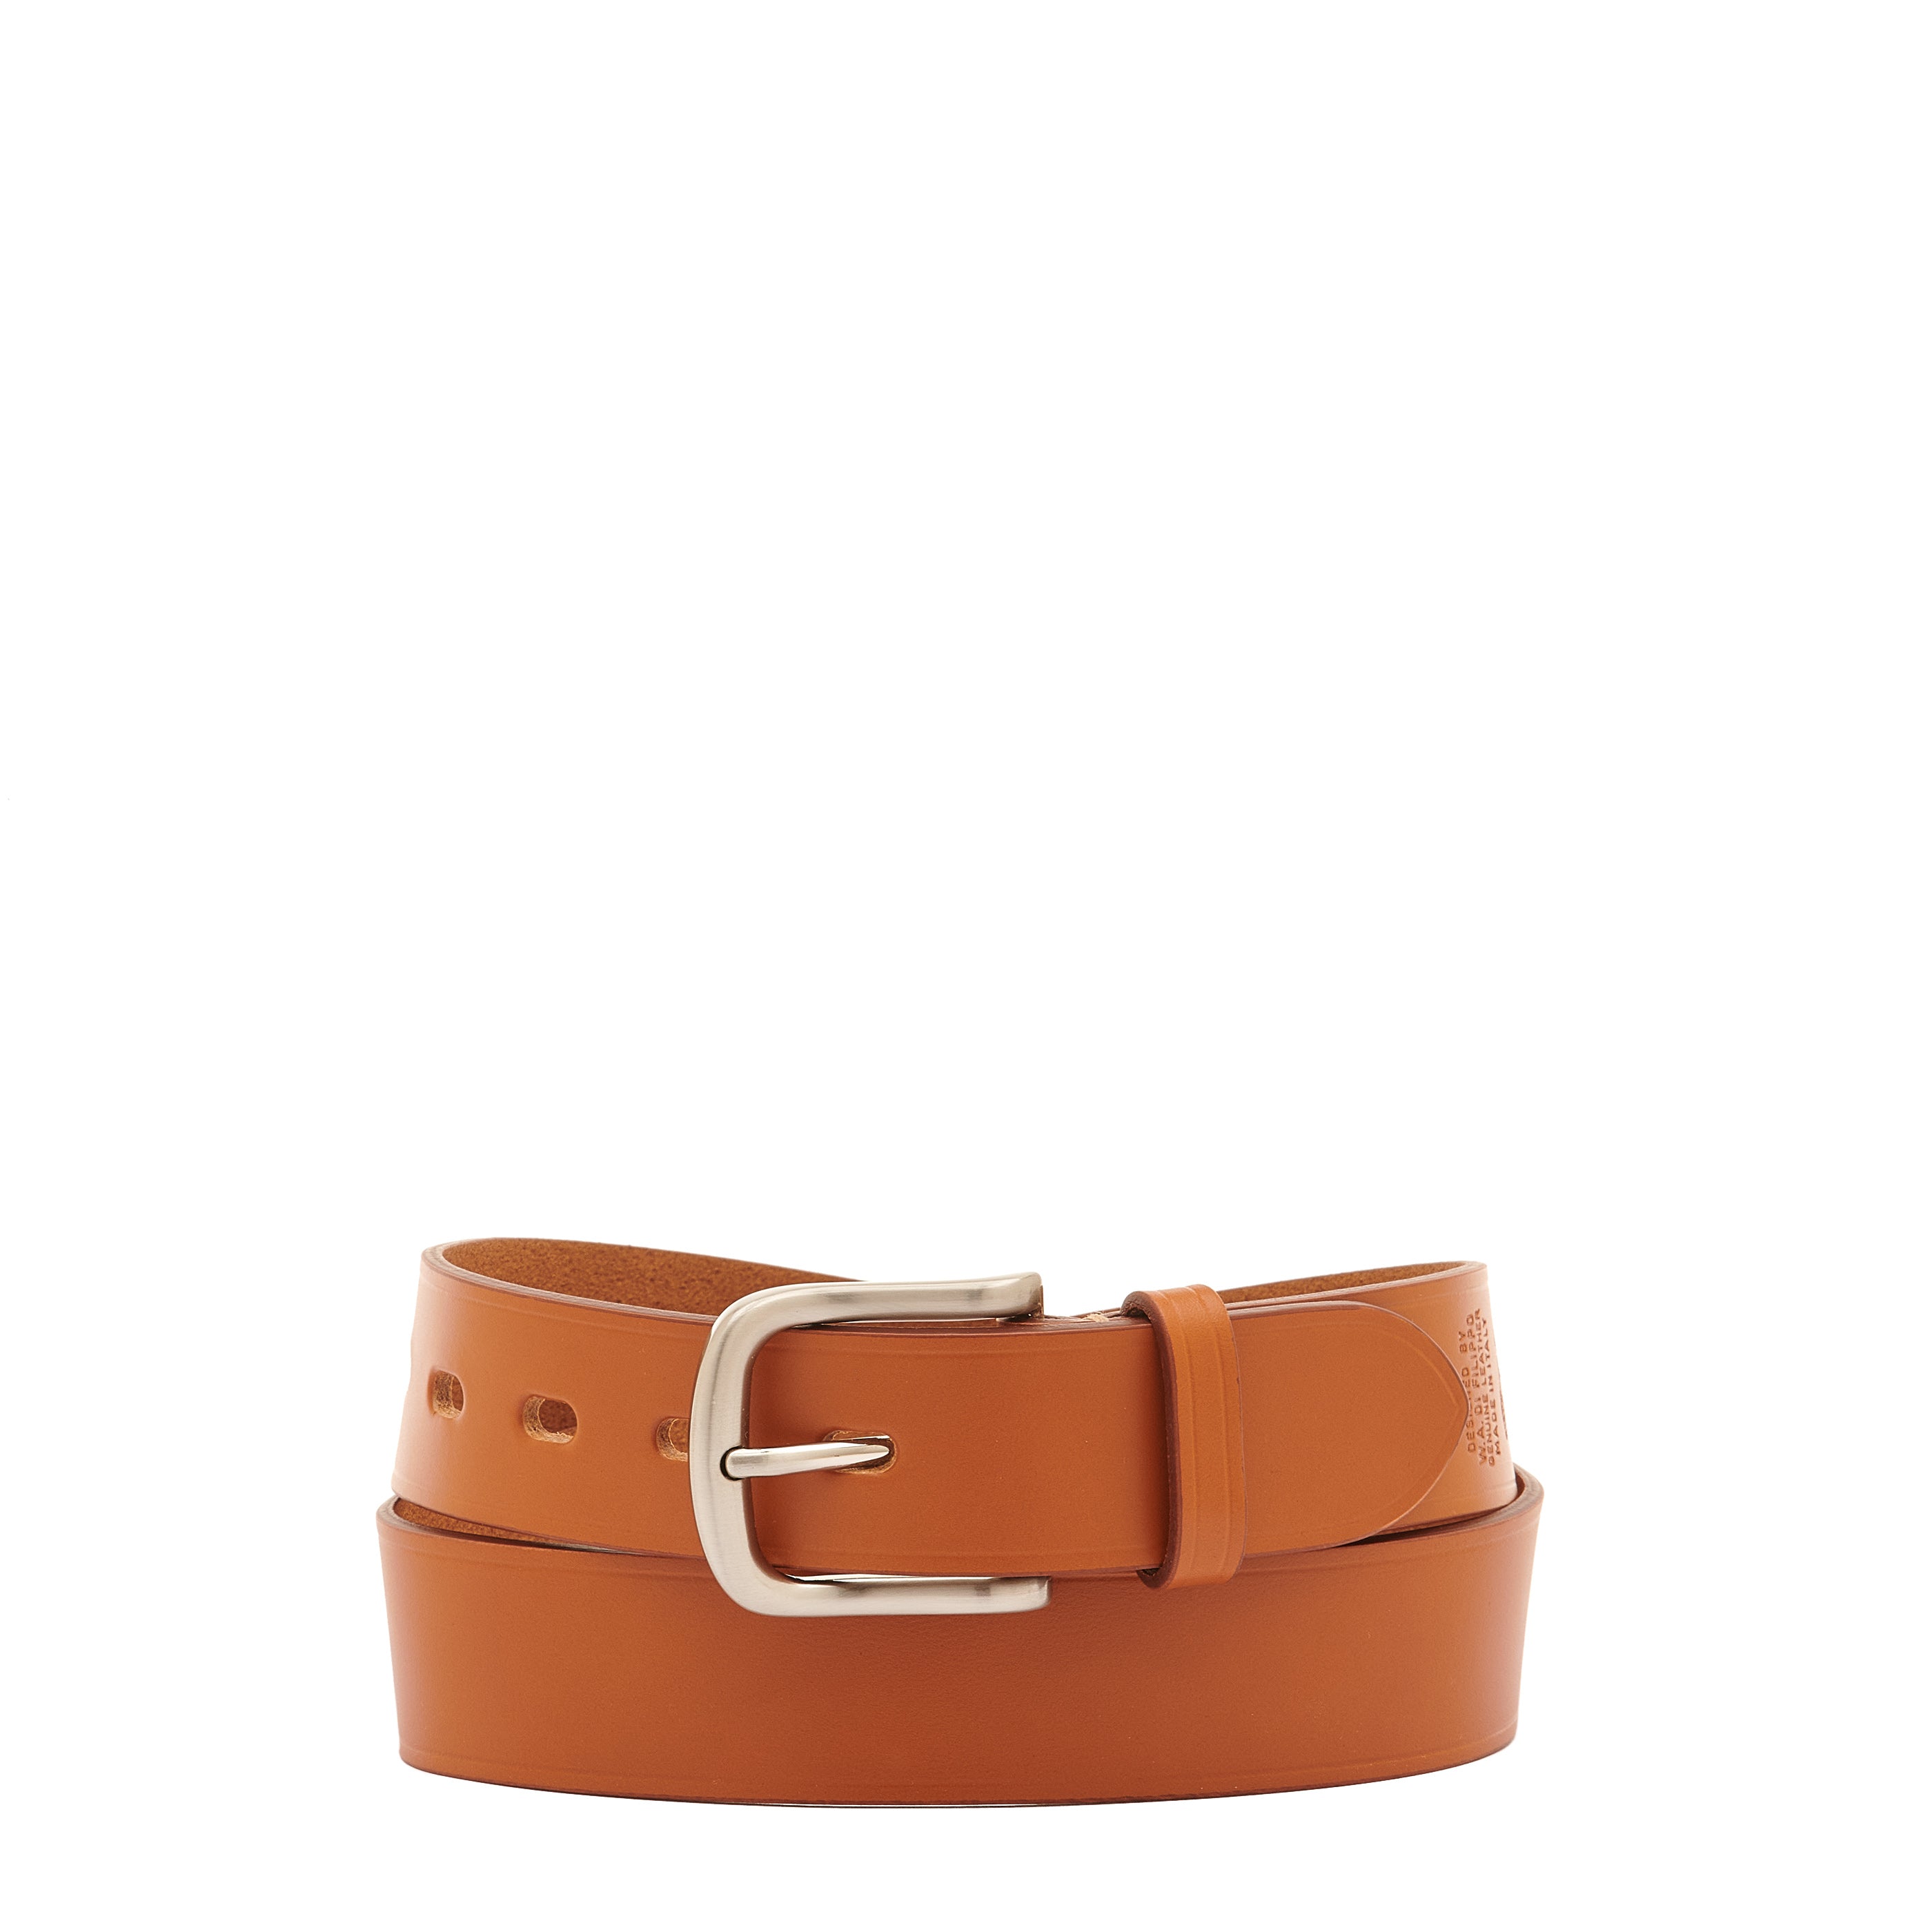 Men's belt in leather color caramel